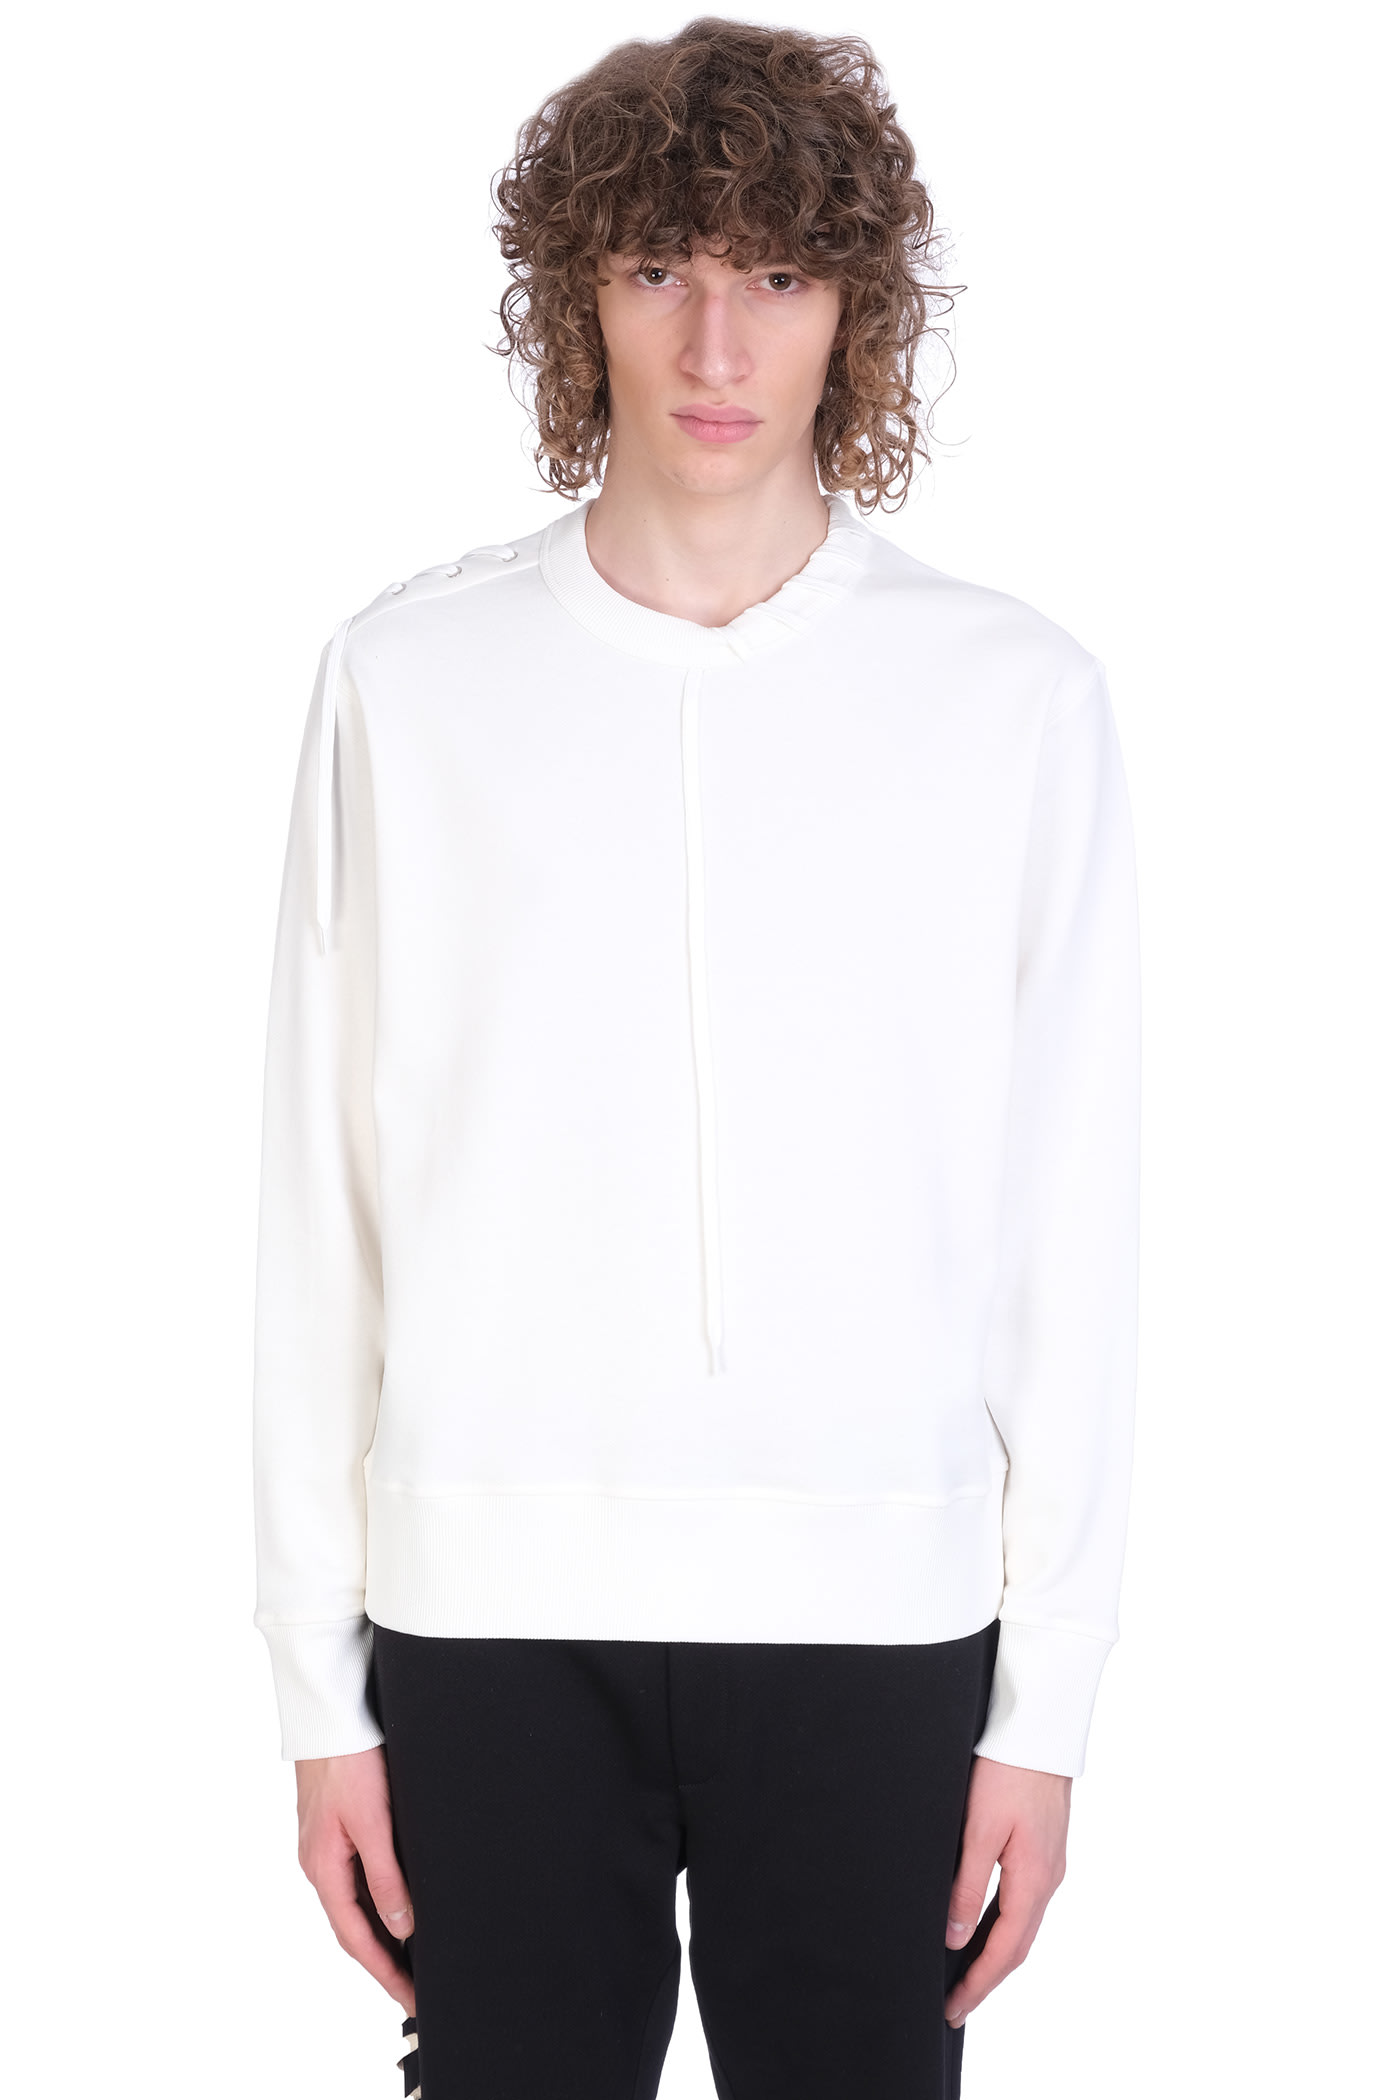 Craig Green Sweatshirt In White Cotton